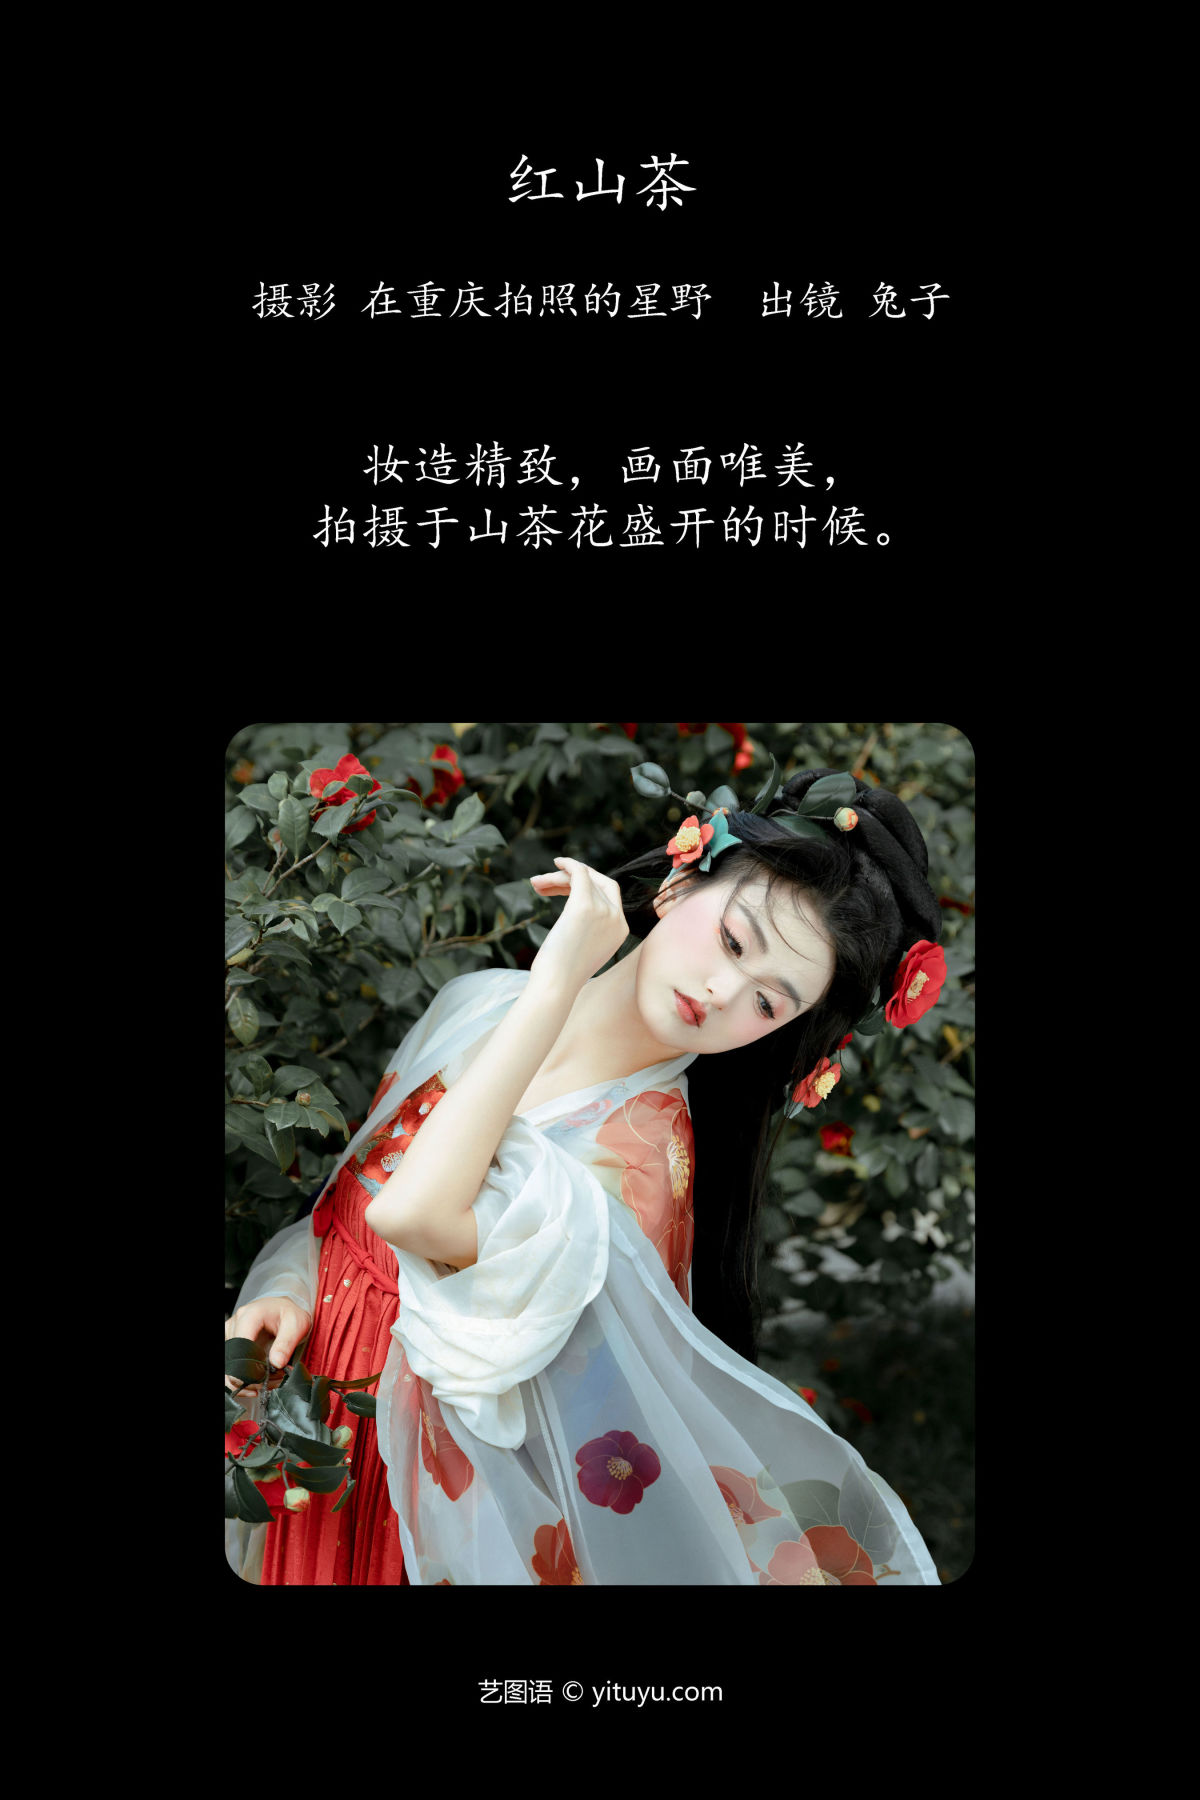 在重庆拍照的星野_华丽《红山茶》美图作品图片2